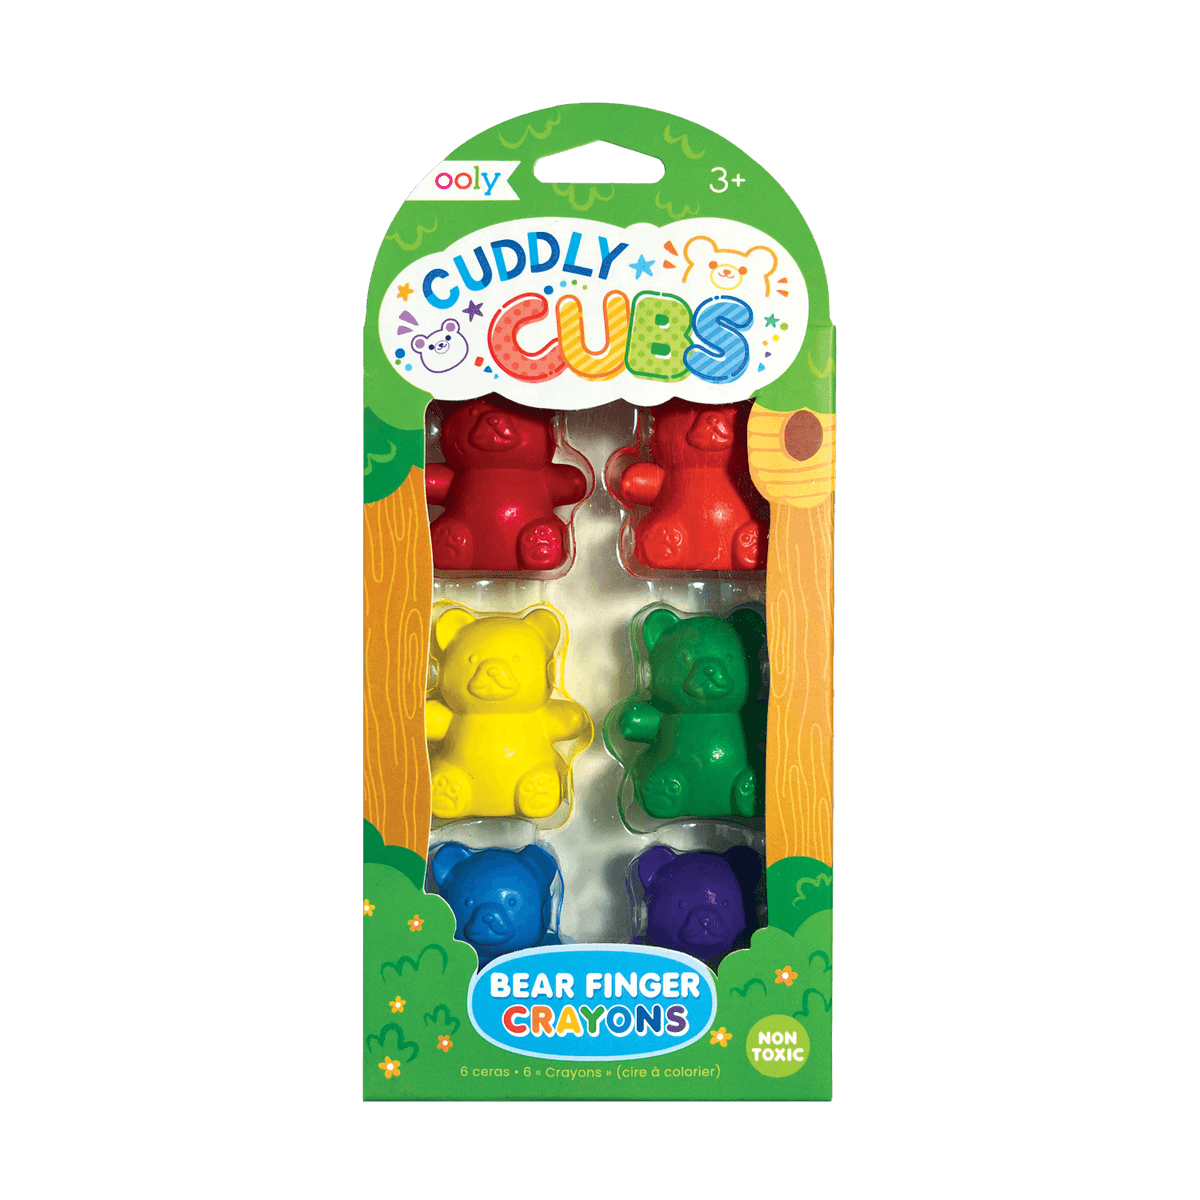 Happy Triangles Jumbo Crayons – Treehouse Toys